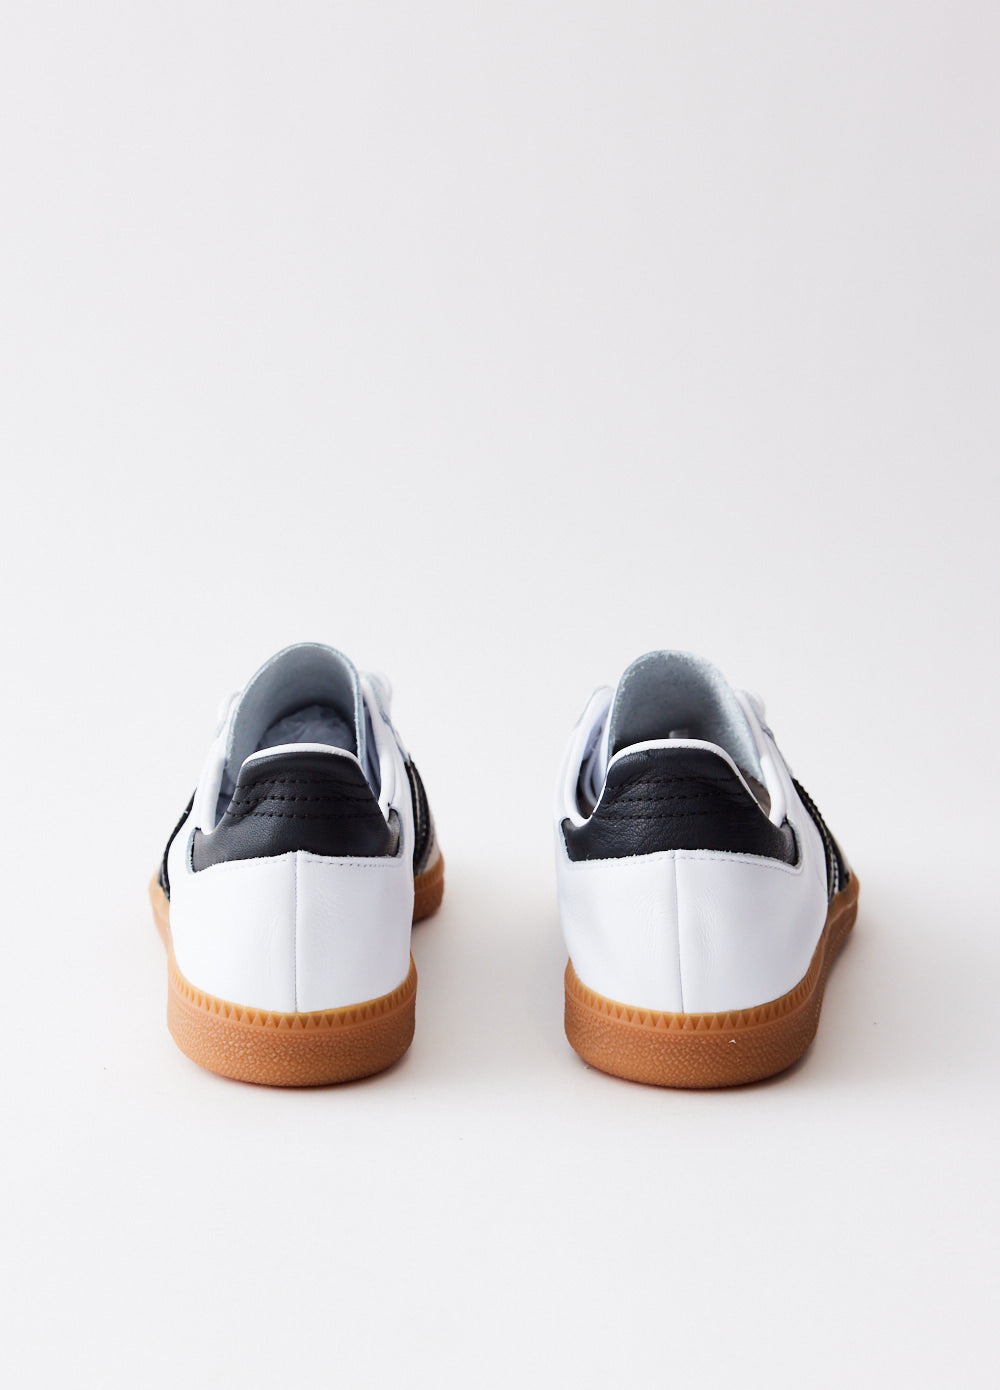 adidas Samba Decon Shoes - White, Unisex Lifestyle